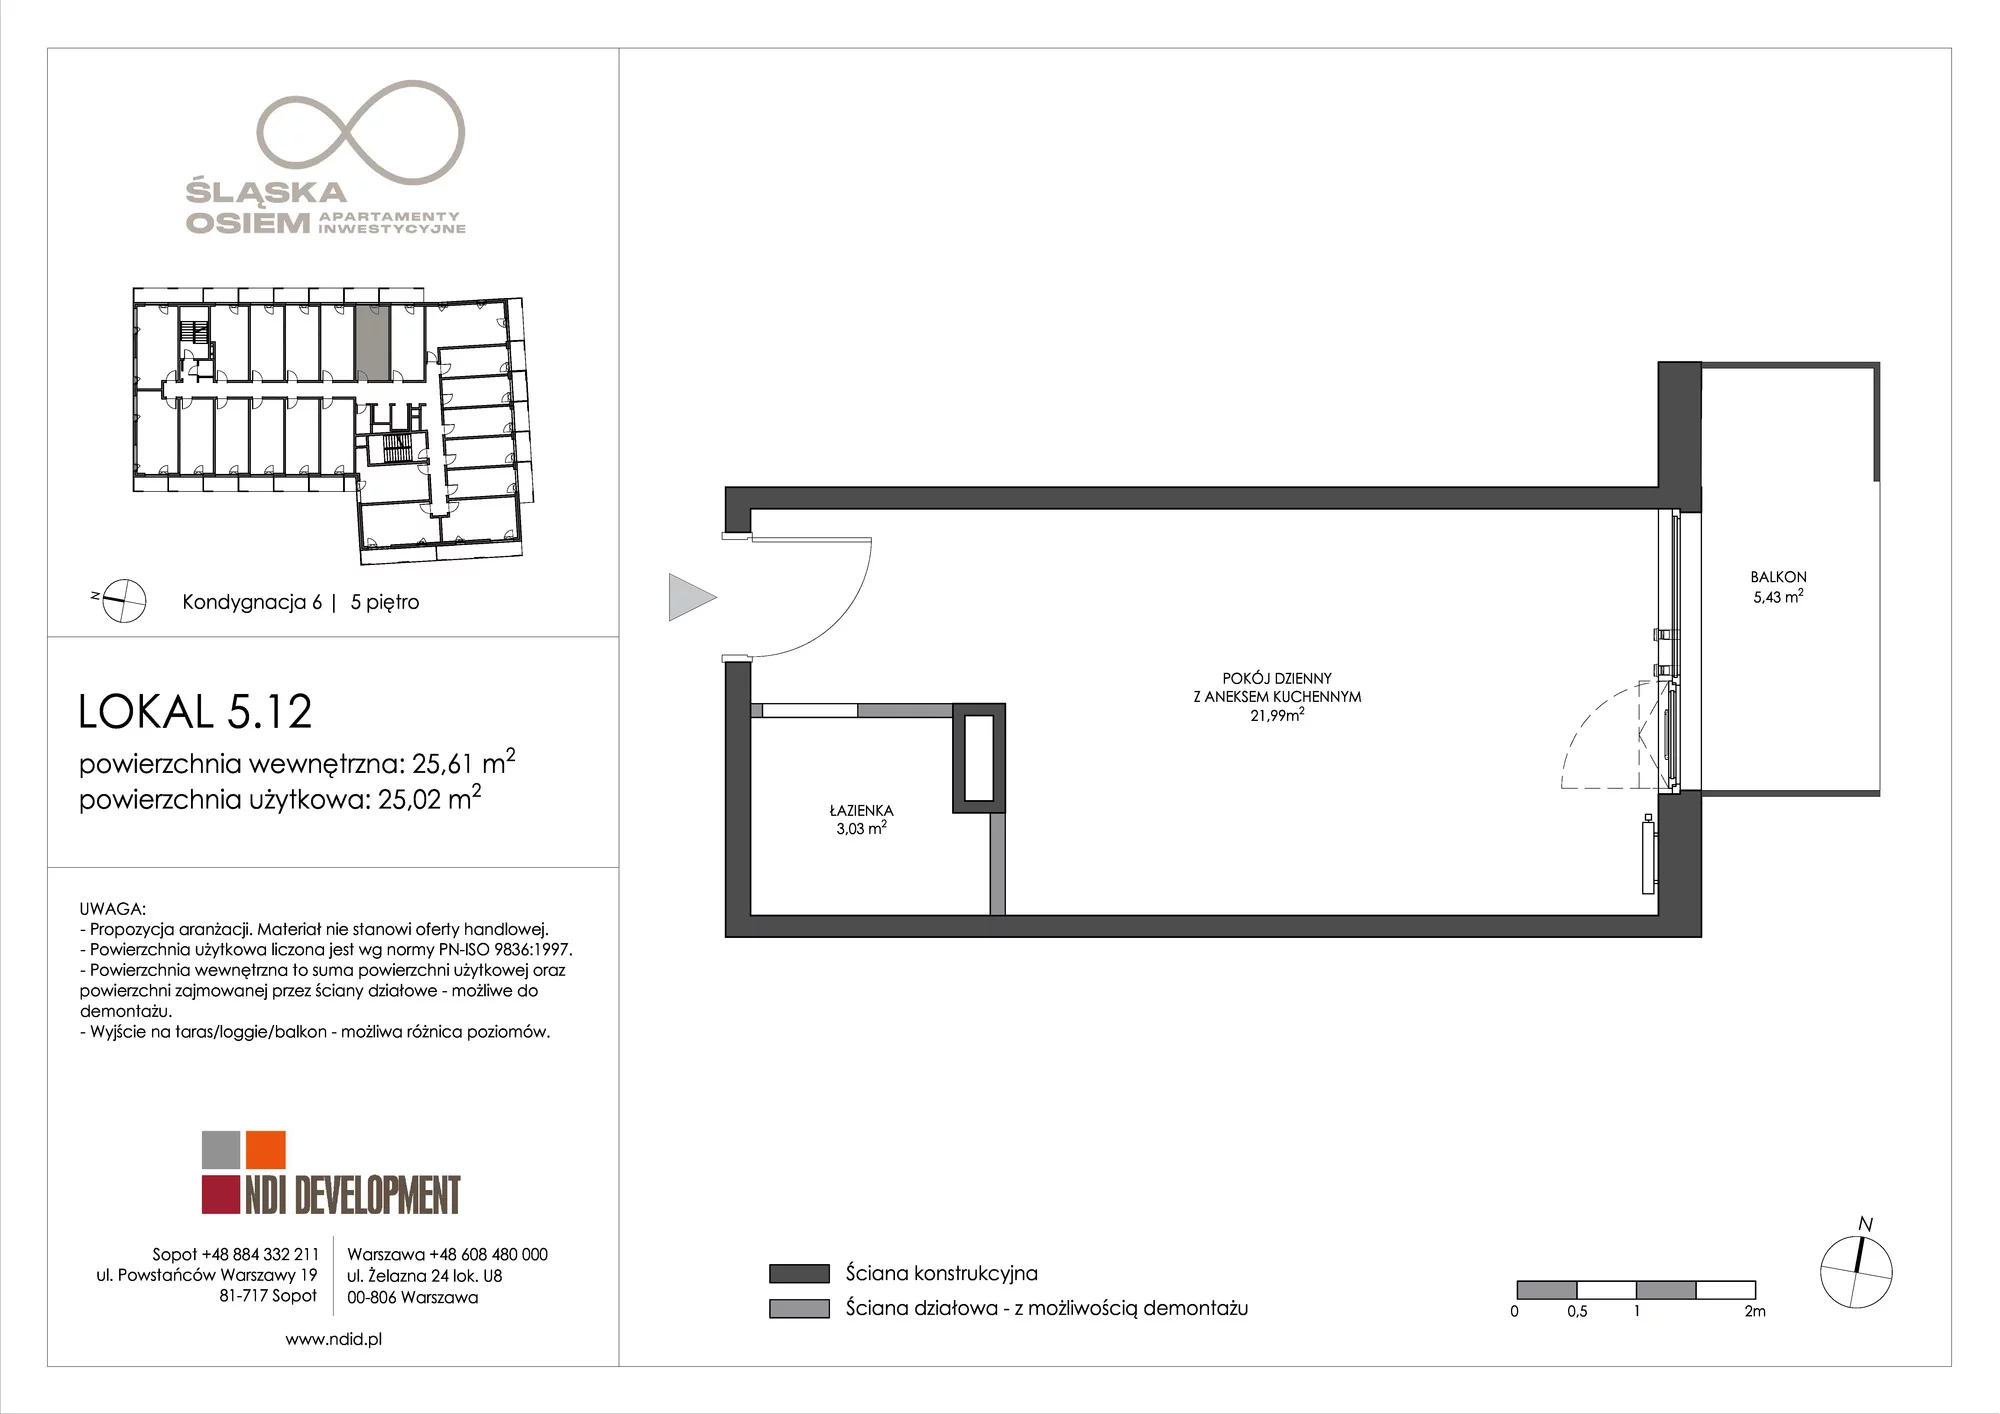 Apartament inwestycyjny 25,61 m², piętro 5, oferta nr 5.12, Śląska Osiem, Gdańsk, Przymorze, ul. Śląska 8